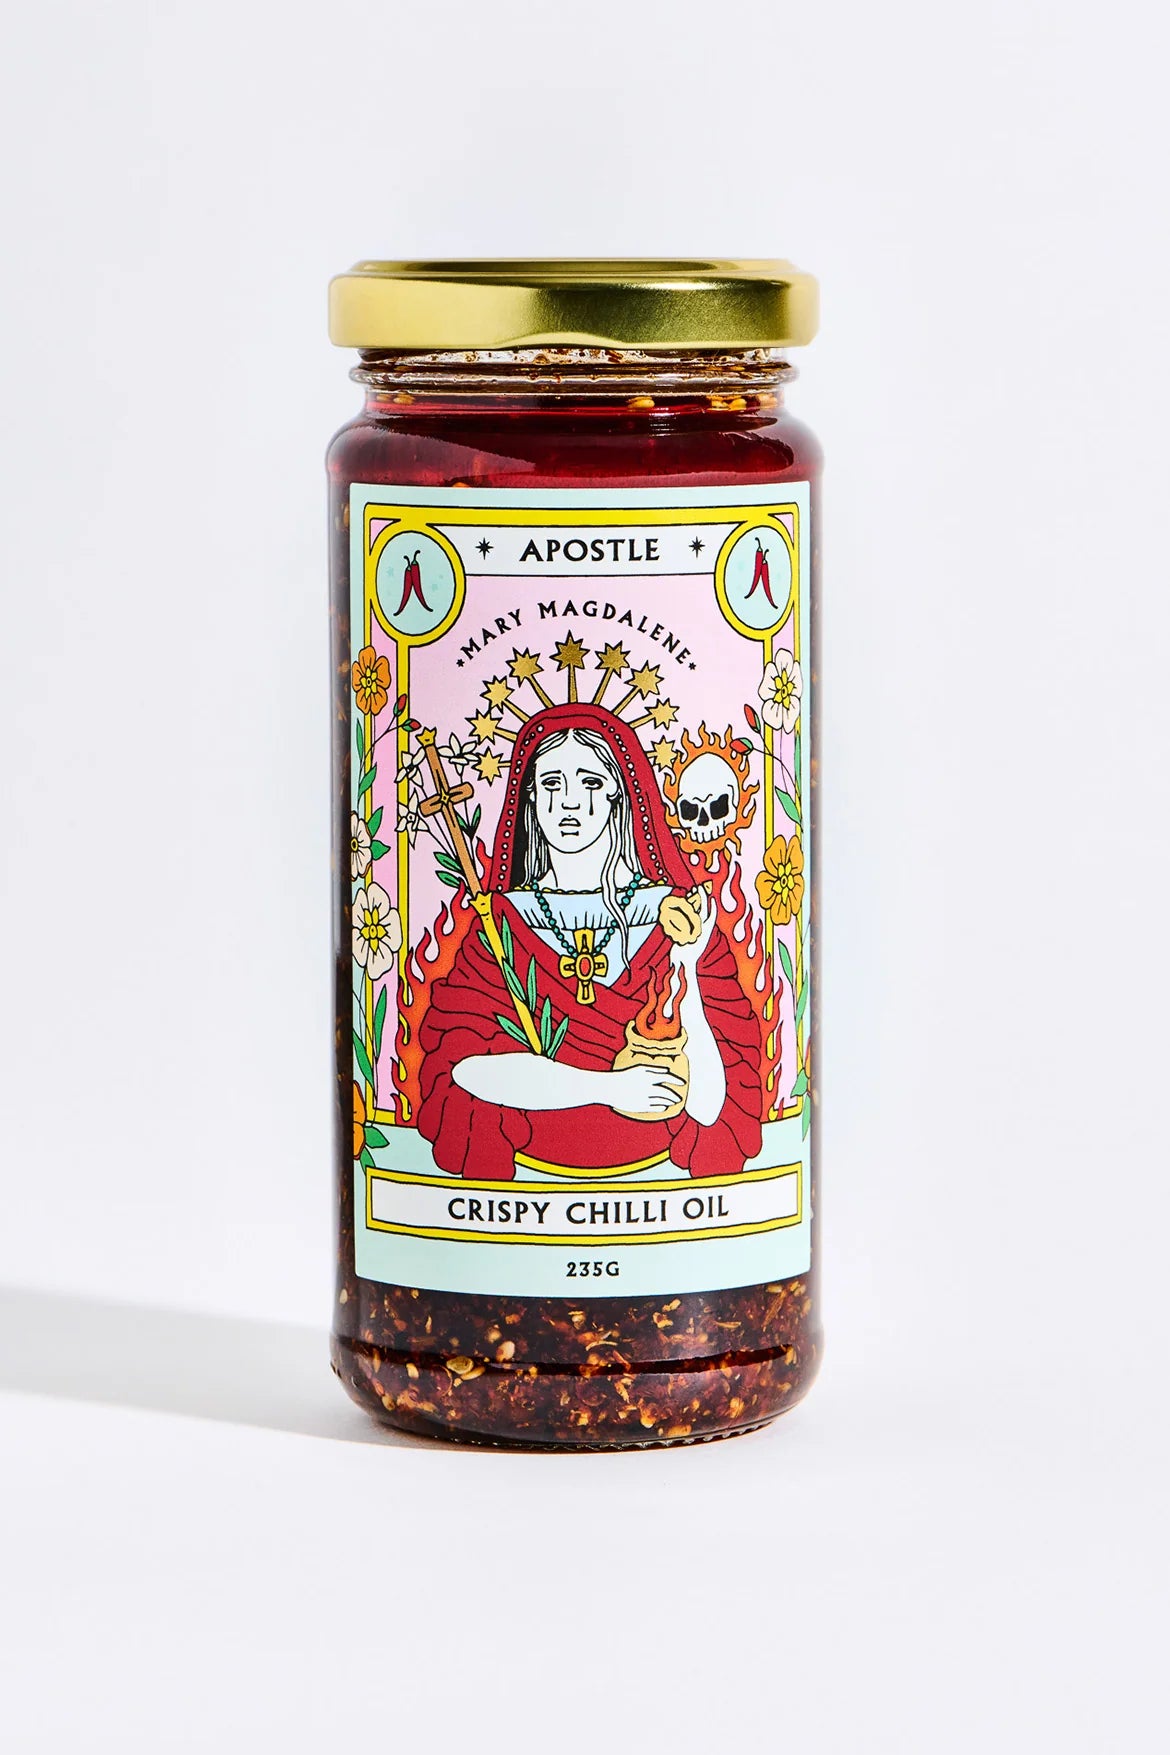 Crispy Chilli Oil